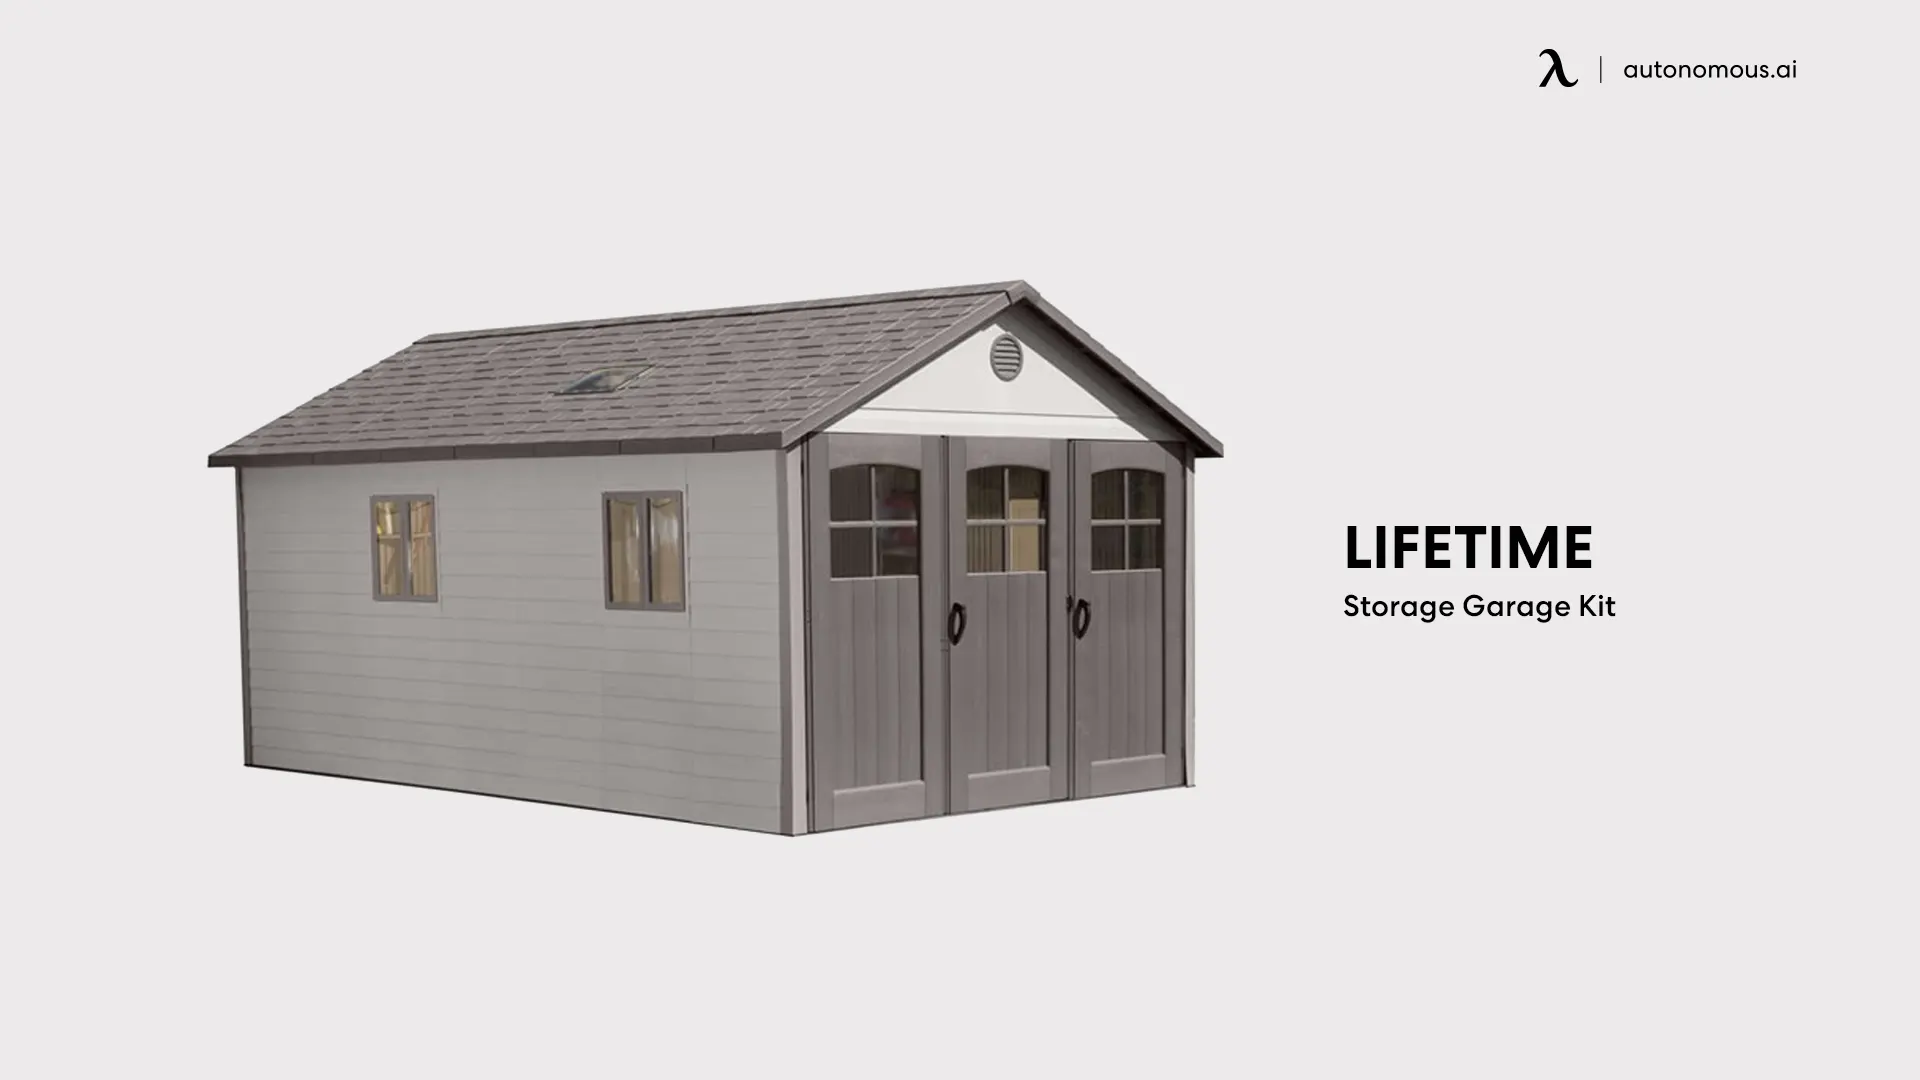 Lifetime Storage Garage Kit - large backyard shed